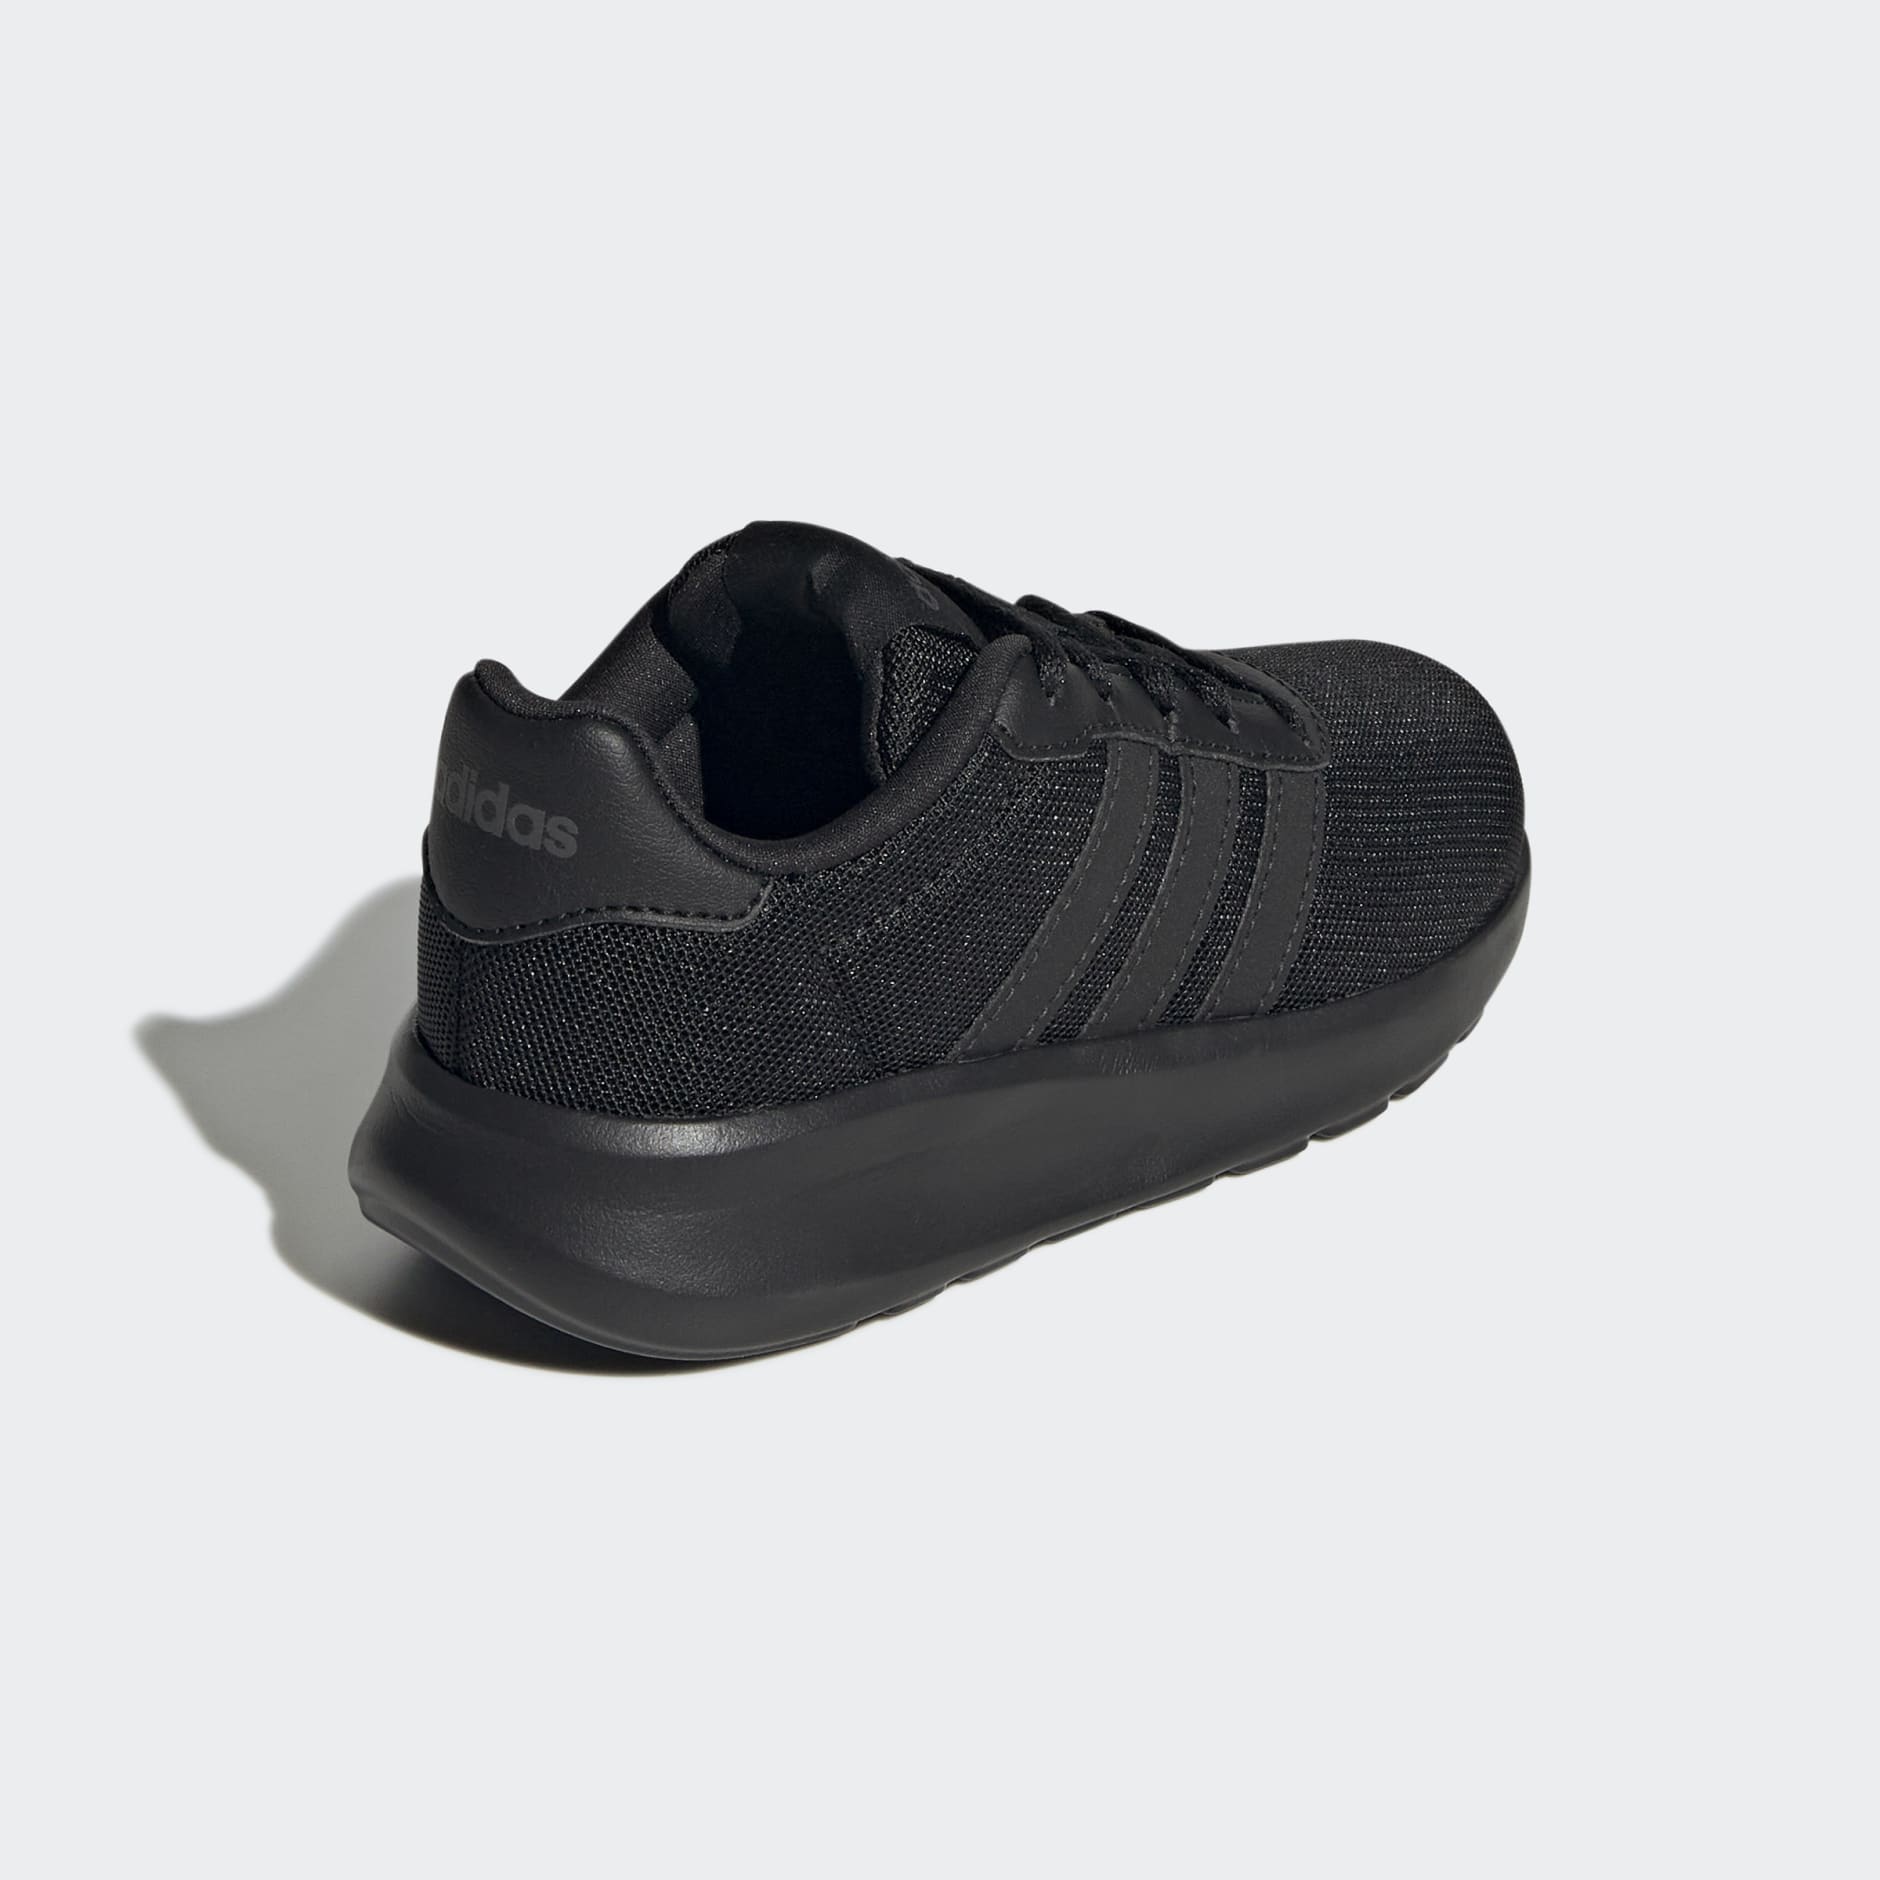 Creo que Horror Ordenado Kids Shoes - Lite Racer 3.0 Shoes - Black | adidas Qatar